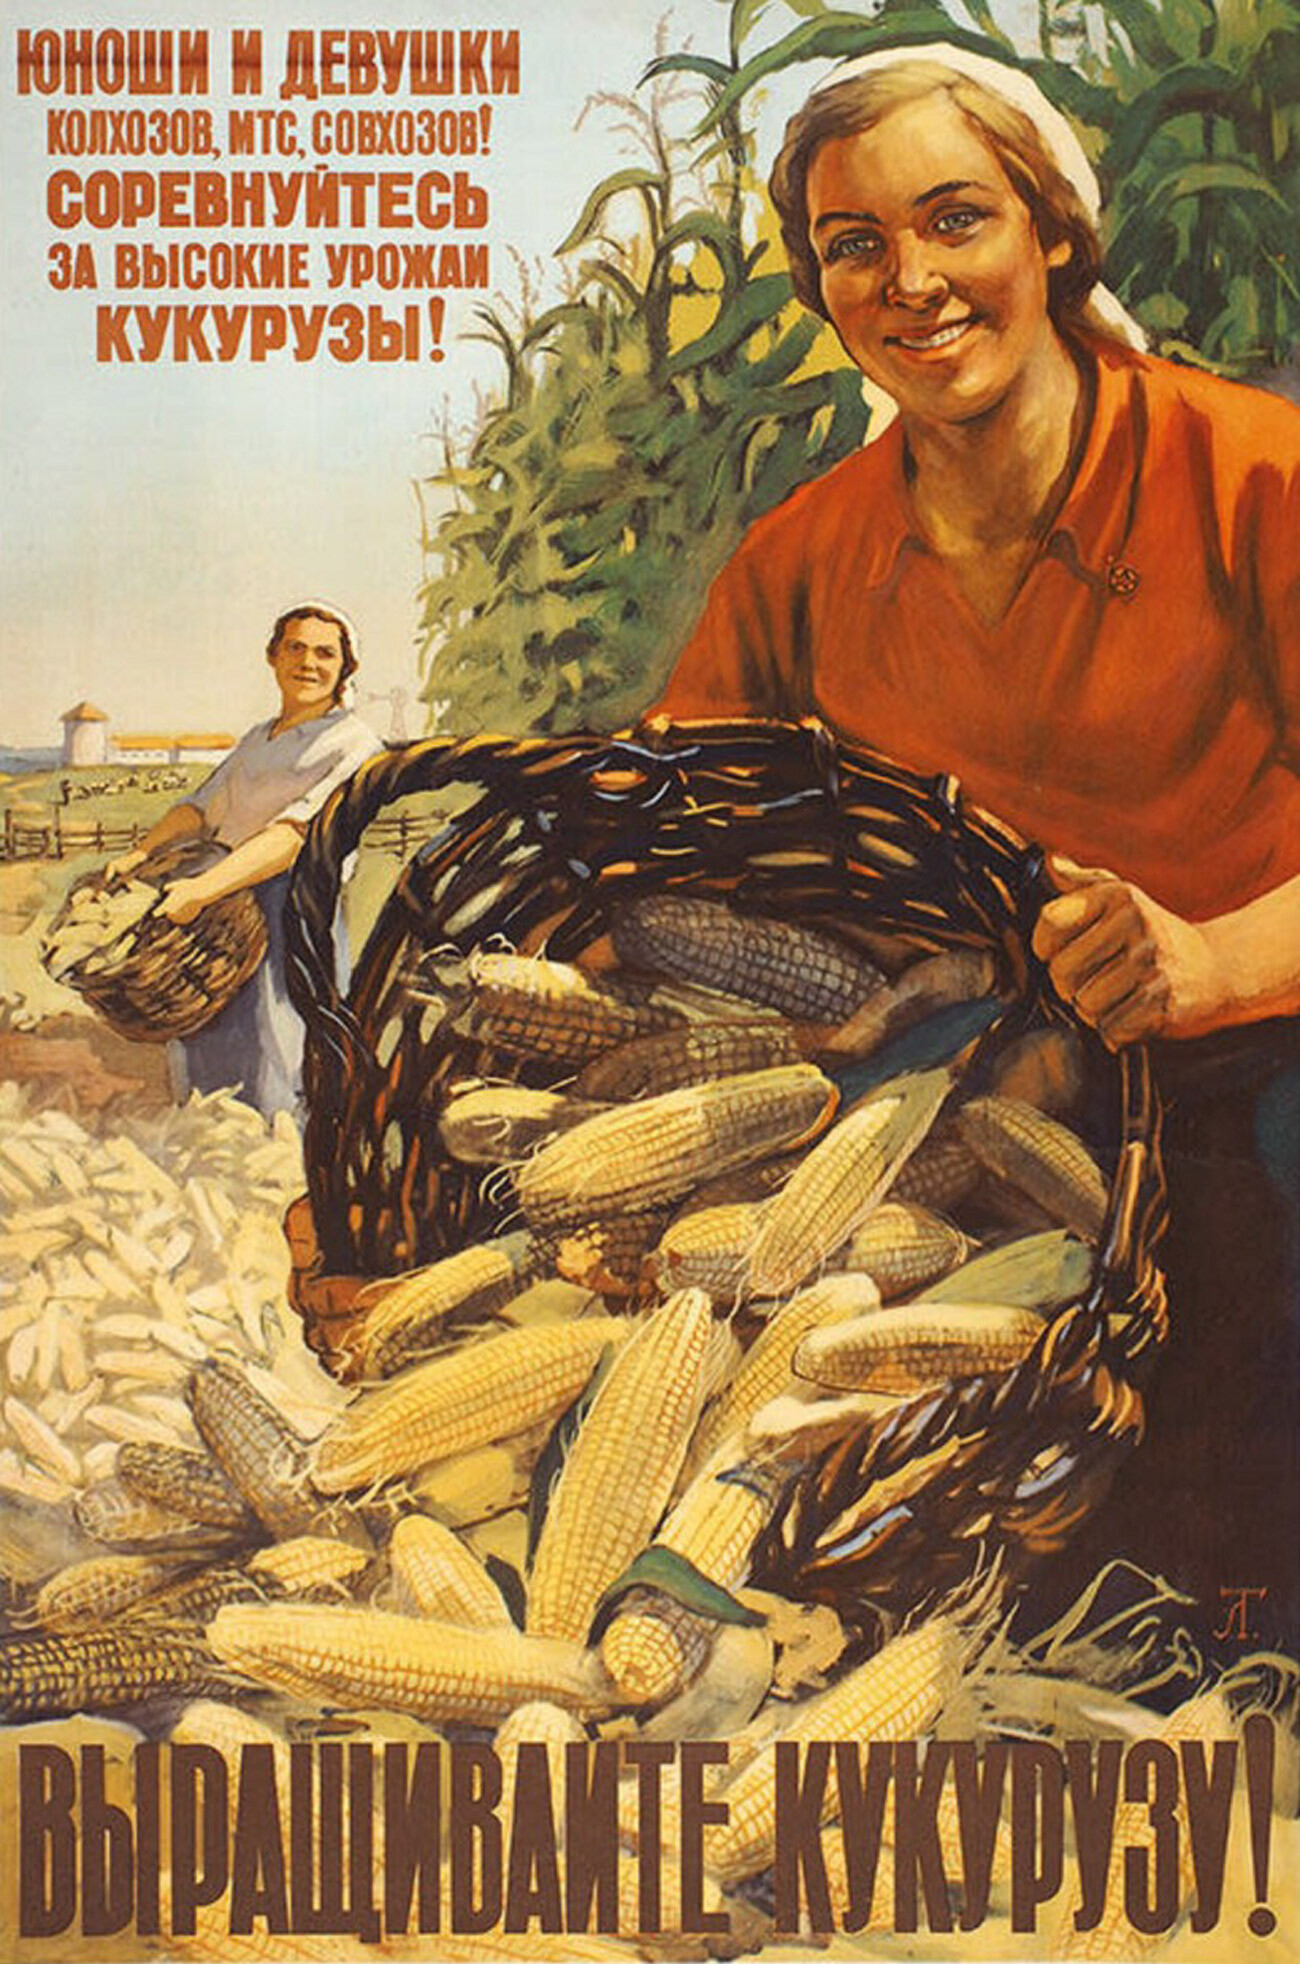 Jjeunes hommes et jeunes filles des kolkhozes, des MTS (stations de machines et de tracteurs), des sovkhozes (fermes d'État) ! Rivalisez pour des récoltes de maïs abondantes! Cultivez du maïs ! 